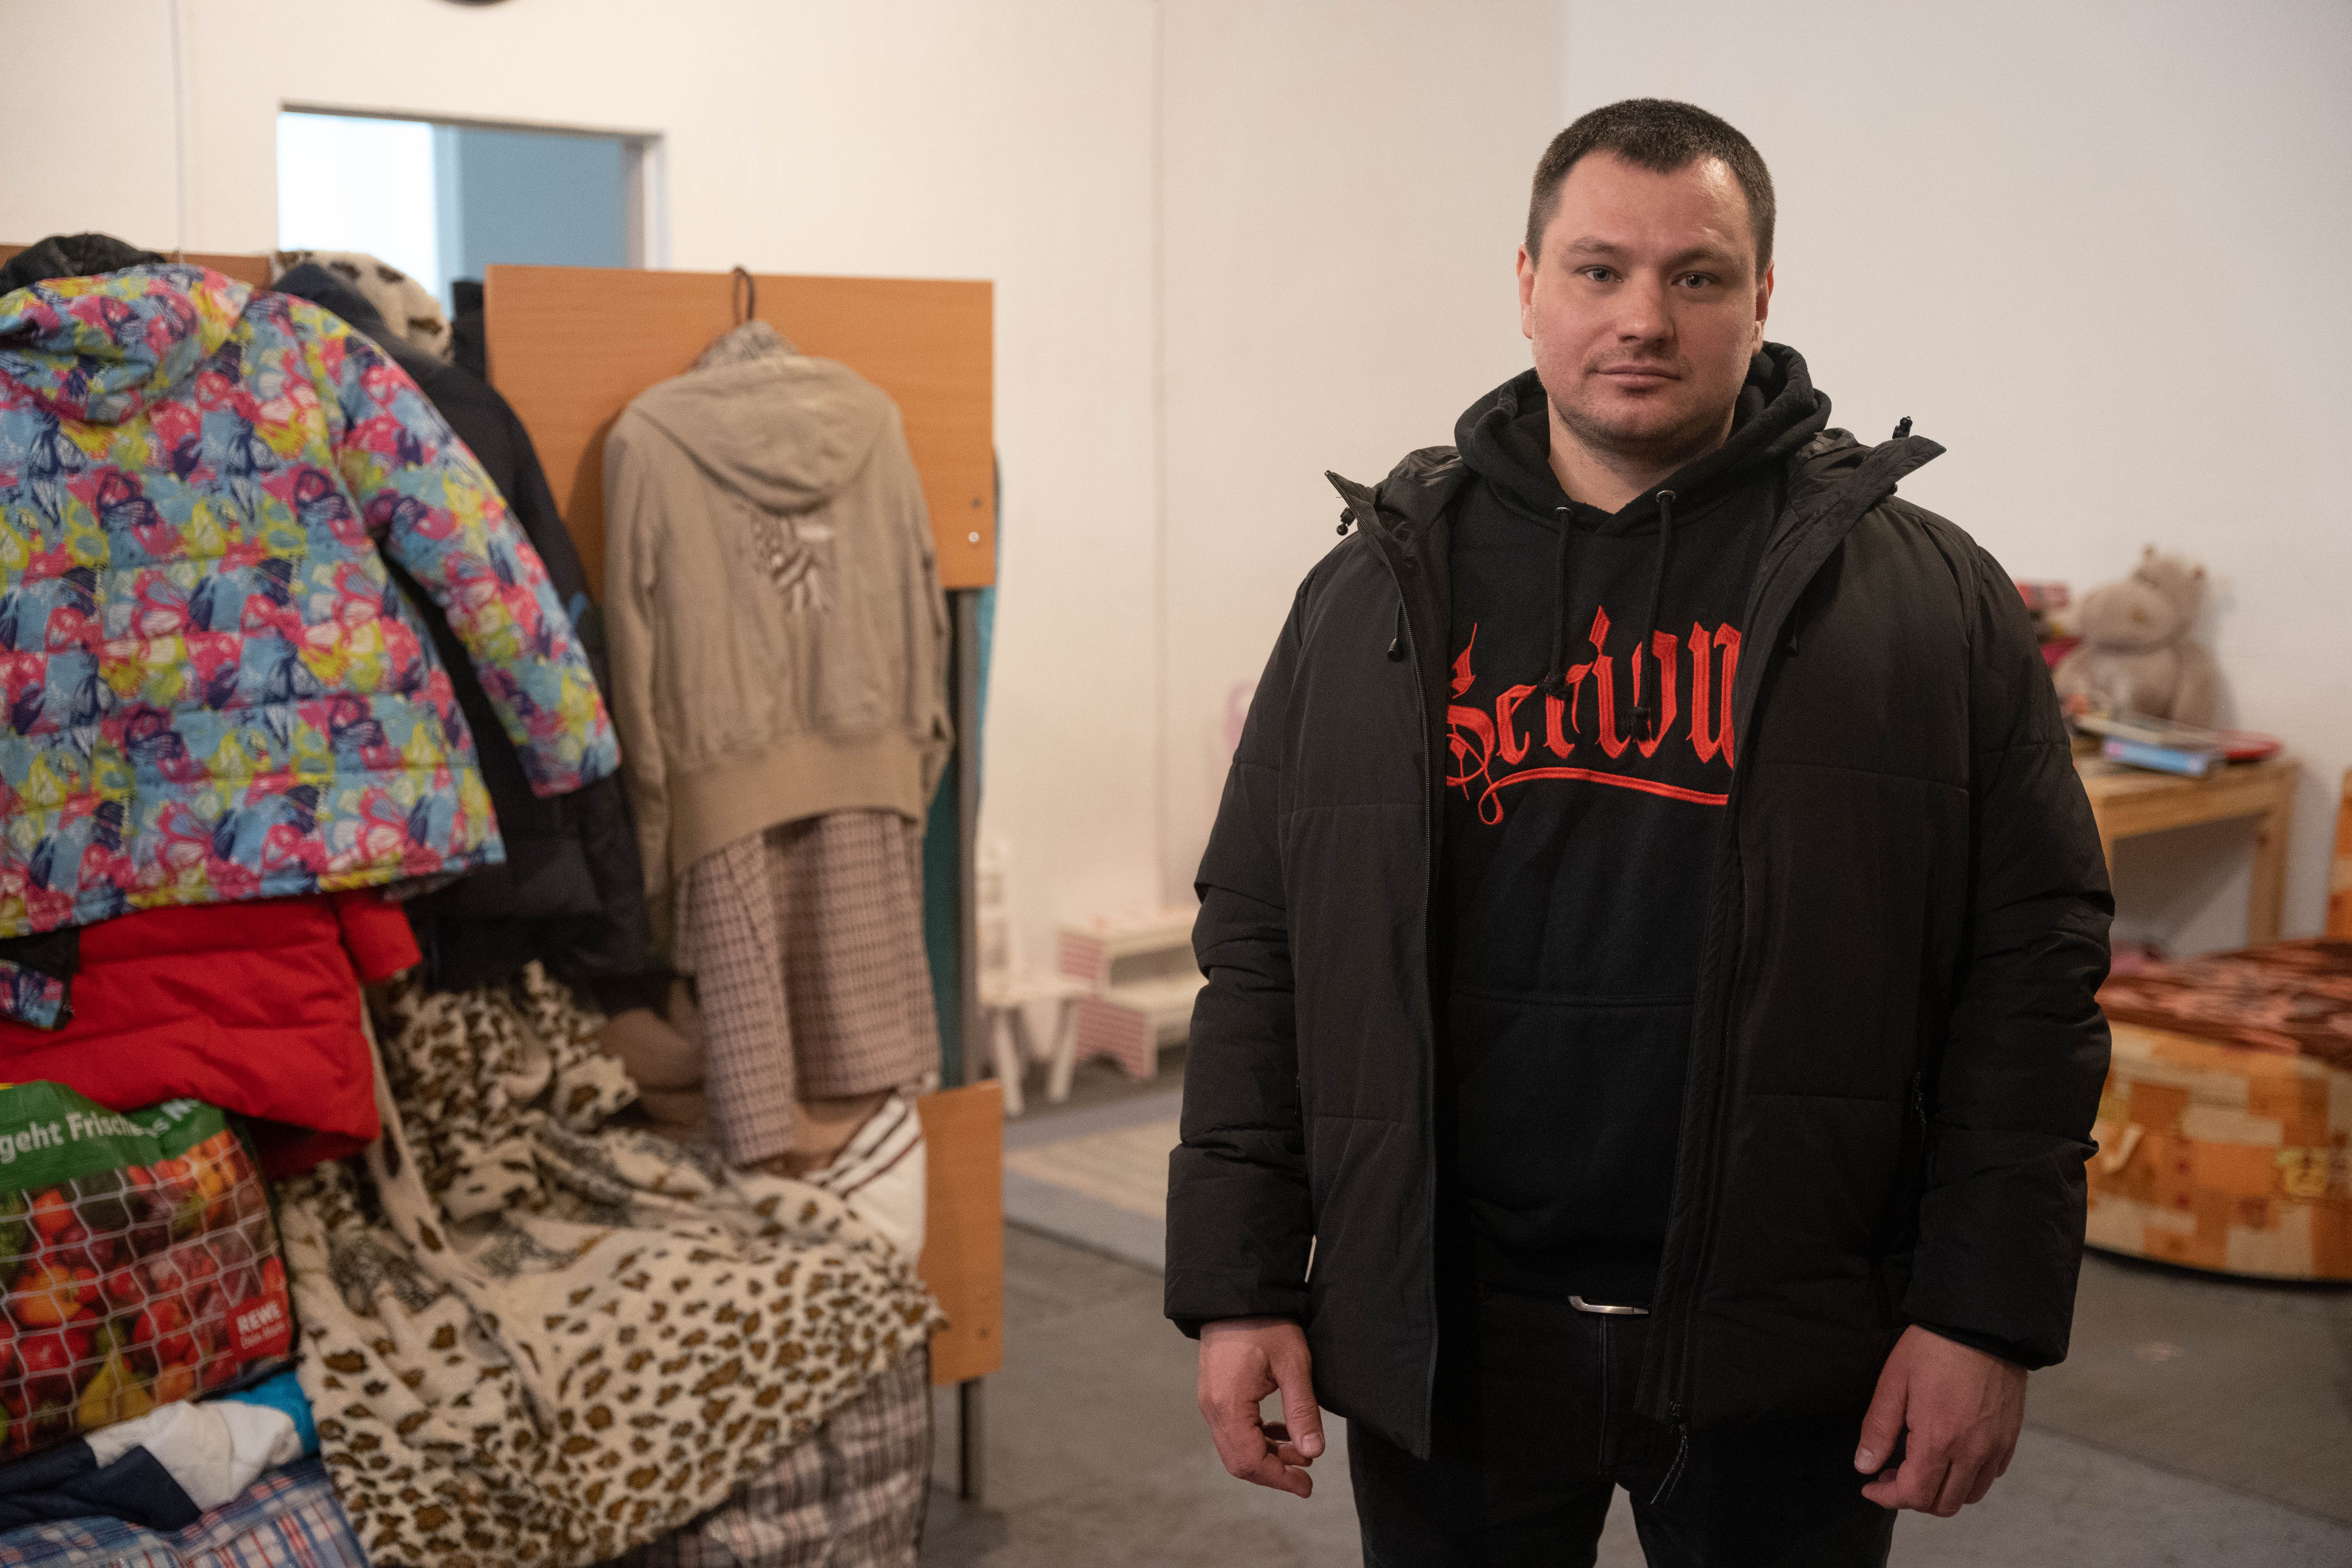 Vadim alquiló un local para instalar un comercio, pero el 24 de febrero decidió que lo convertiría en un refugio. Lo refaccionó y desde agosto recibe compatriotas de todos lados.